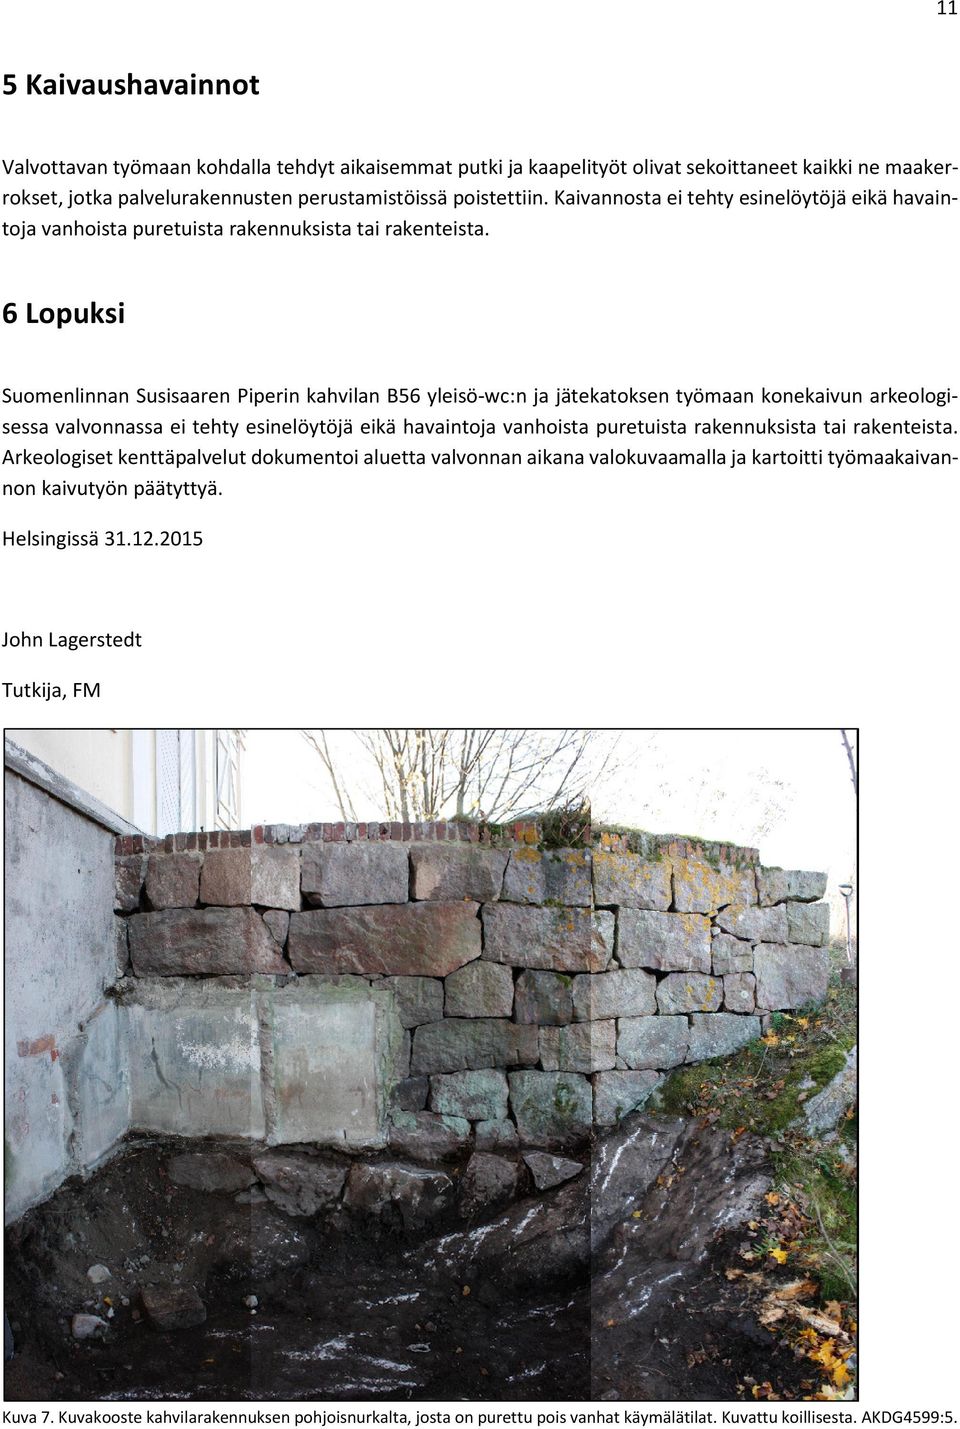 6 Lopuksi Suomenlinnan Susisaaren Piperin kahvilan B56 yleisö-wc:n ja jätekatoksen työmaan konekaivun arkeologisessa valvonnassa ei tehty esinelöytöjä eikä havaintoja vanhoista puretuista